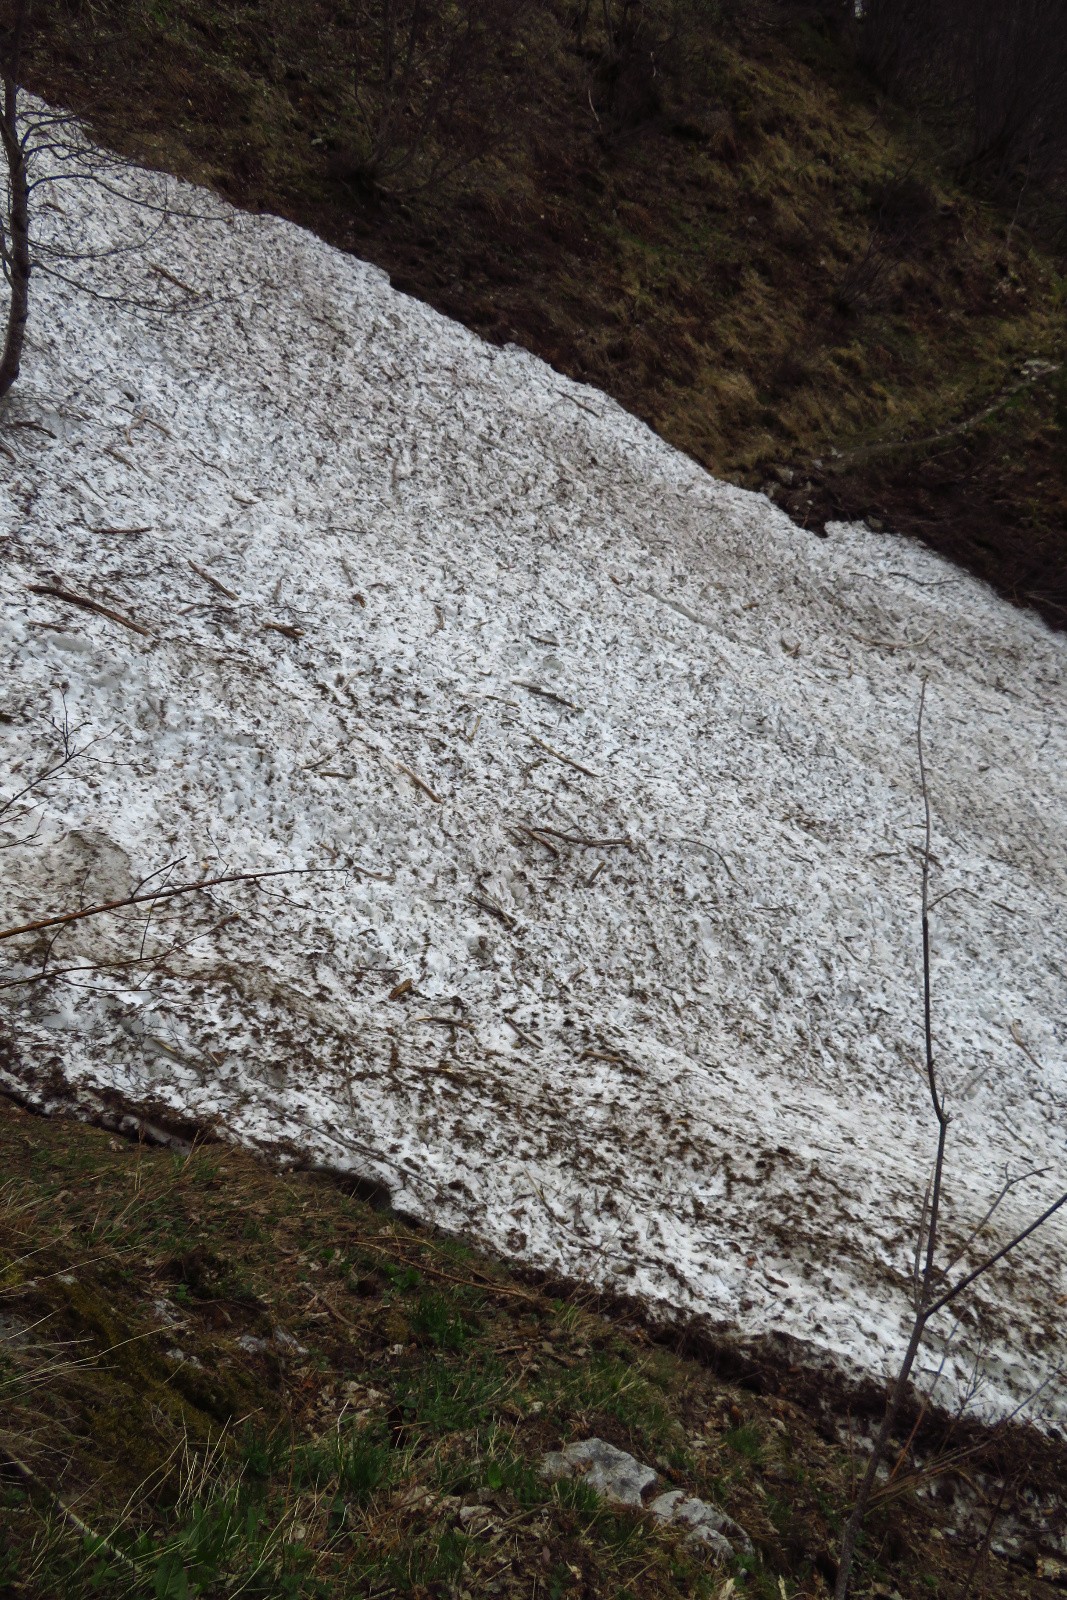 le culot d'avalanche du Ruisseau Perdu à traverser(l'autre - car il y en a 2 généralement - a fondu)